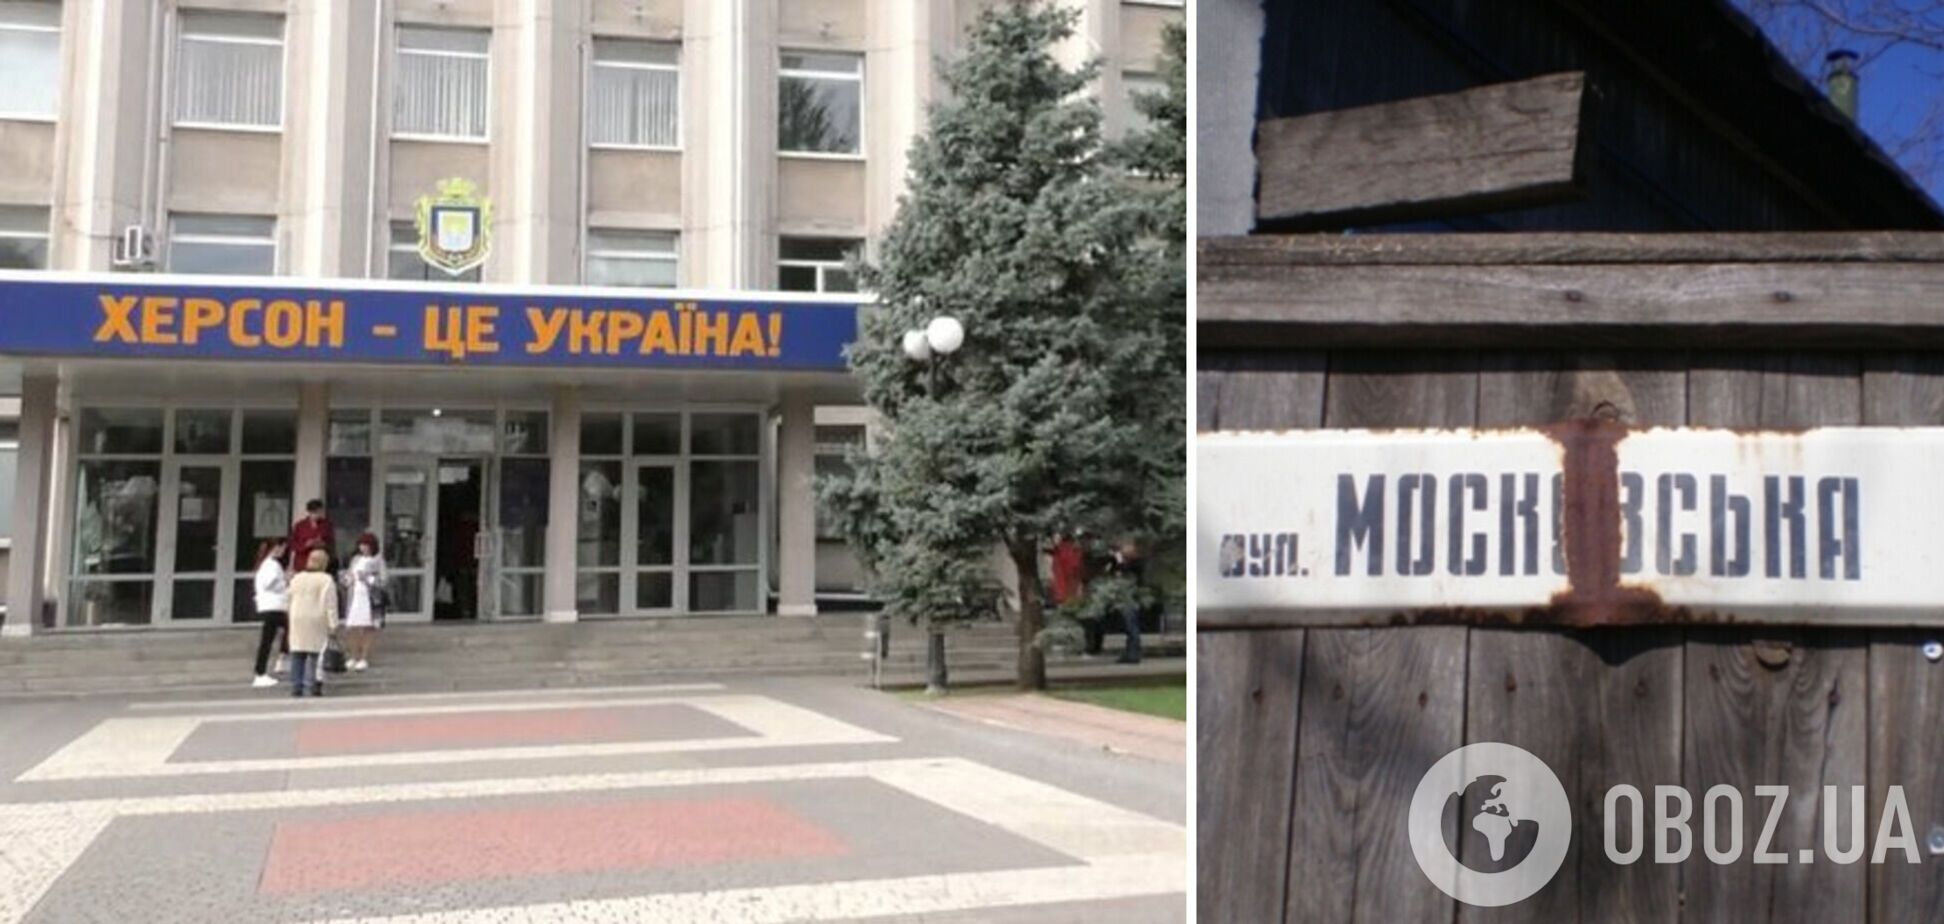 Жители улицы Московская направили мэру Херсона коллективное обращение